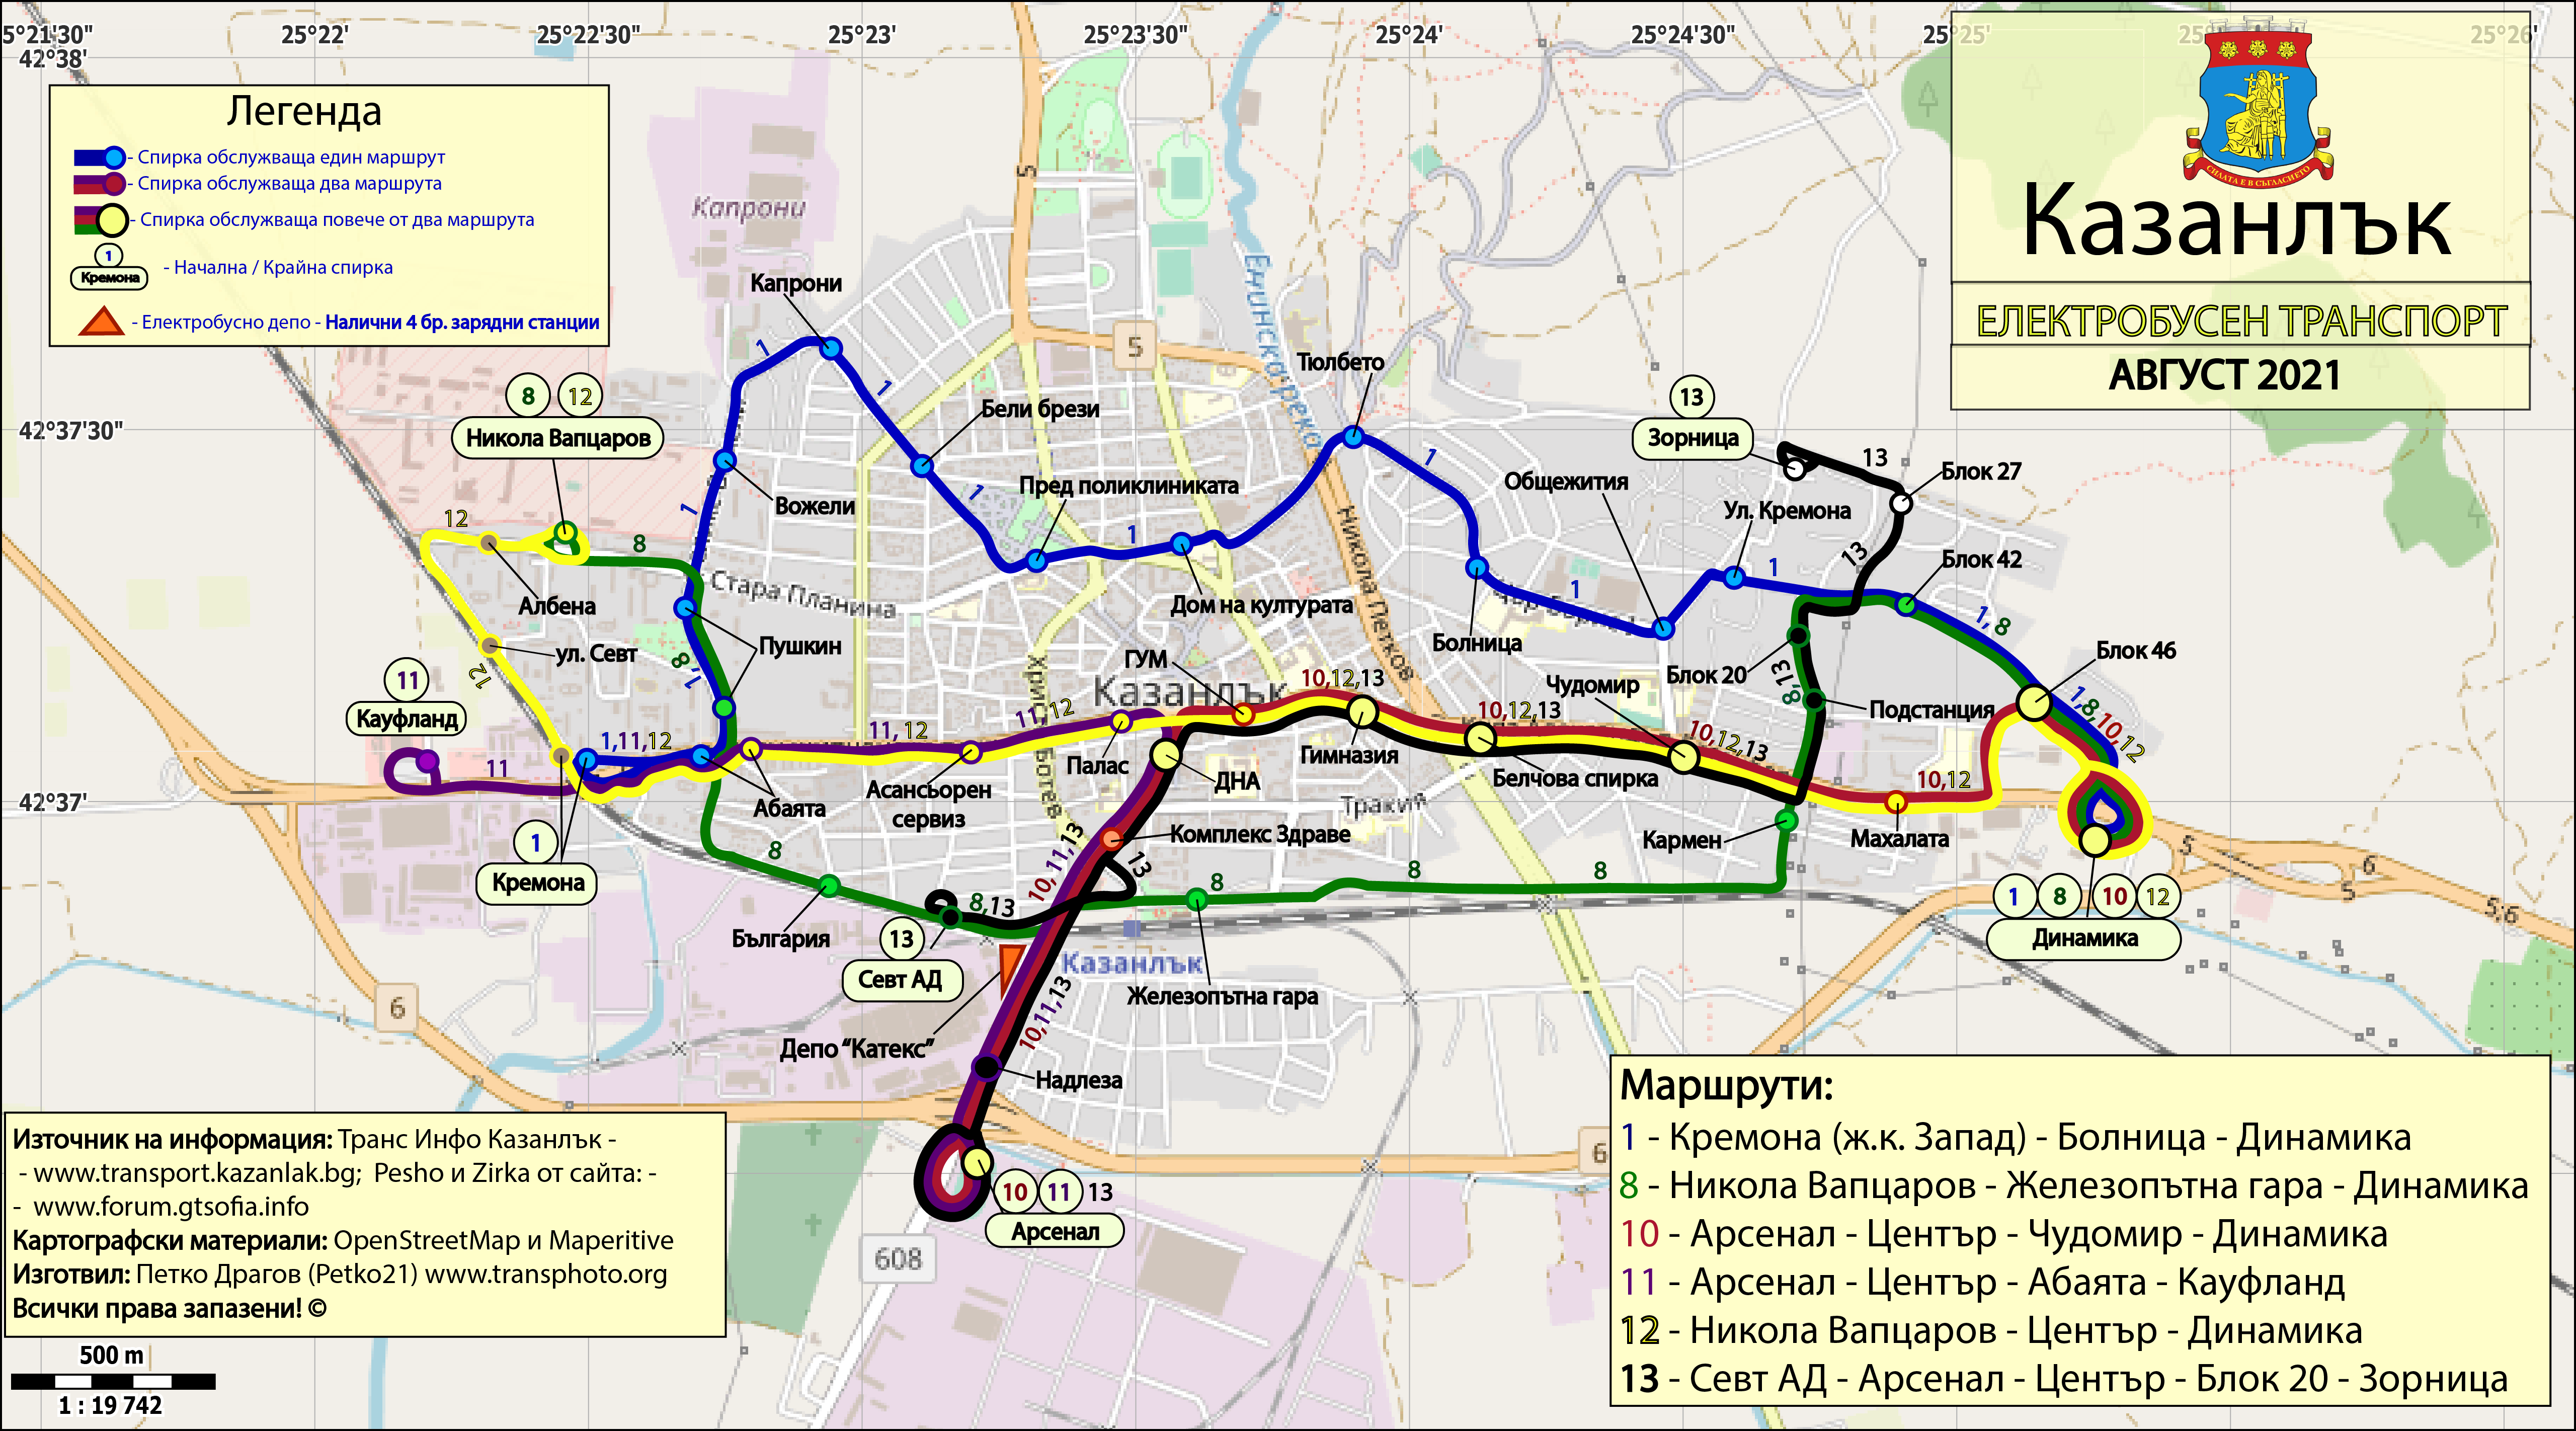 Kazanlak — Maps; Maps made with OpenStreetMap